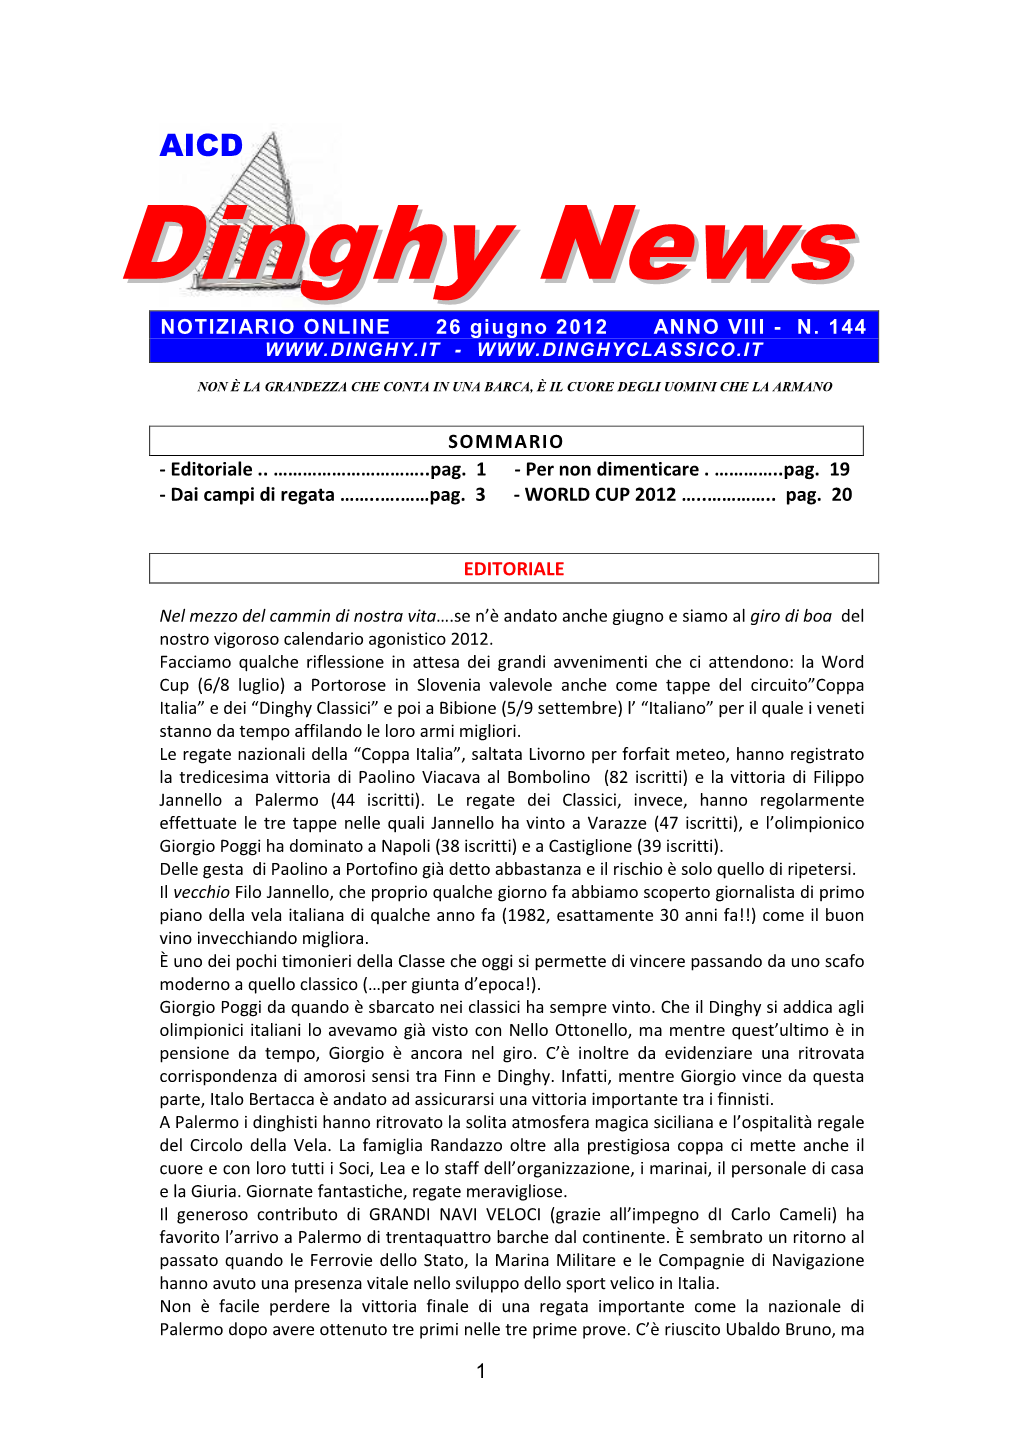 DINGHY NEWS N°